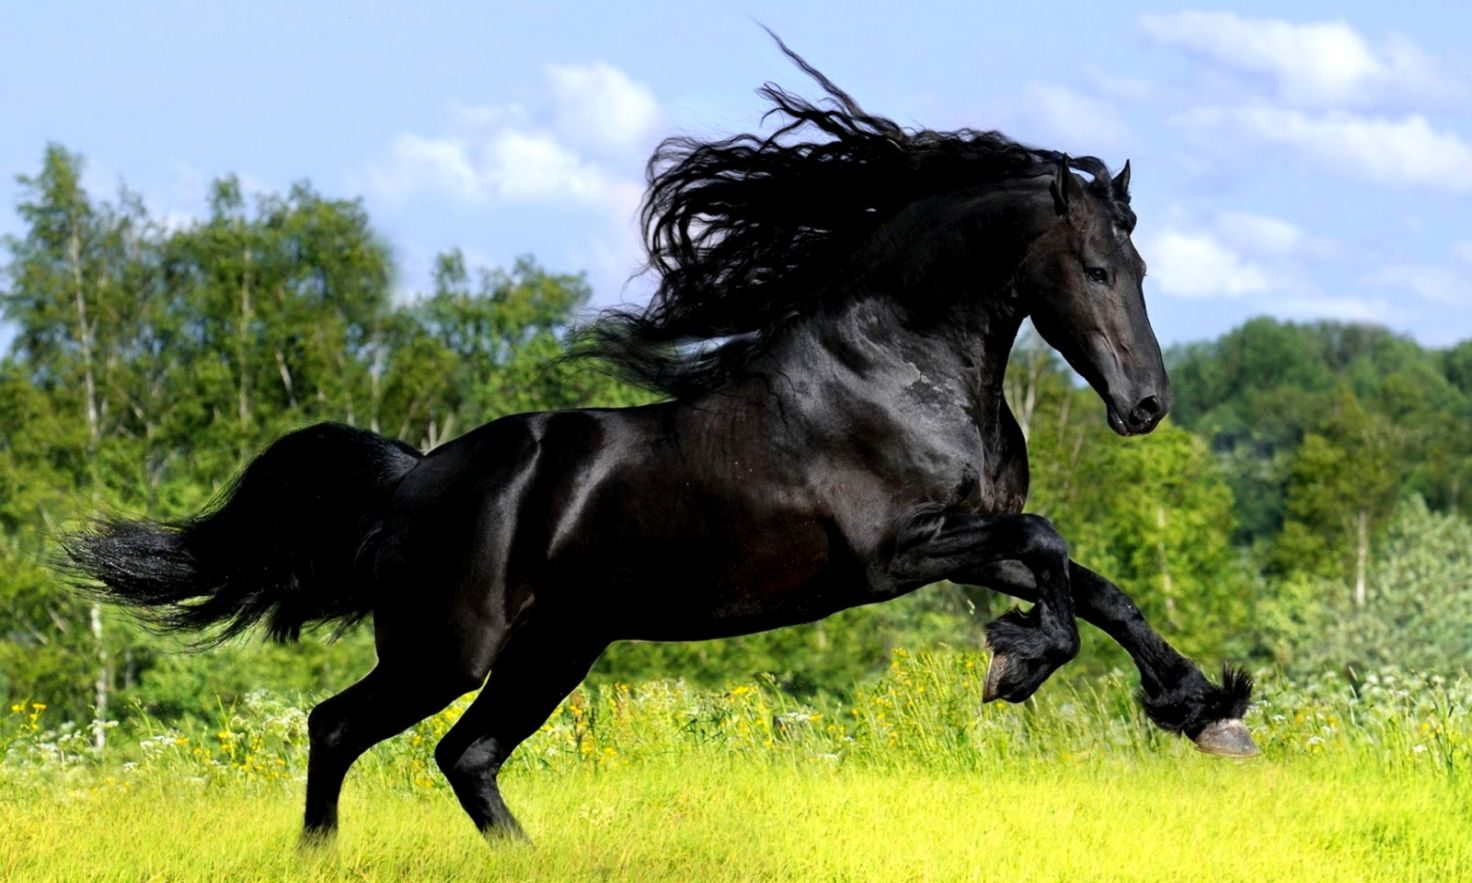 تفسير حلم الحصان الأسود